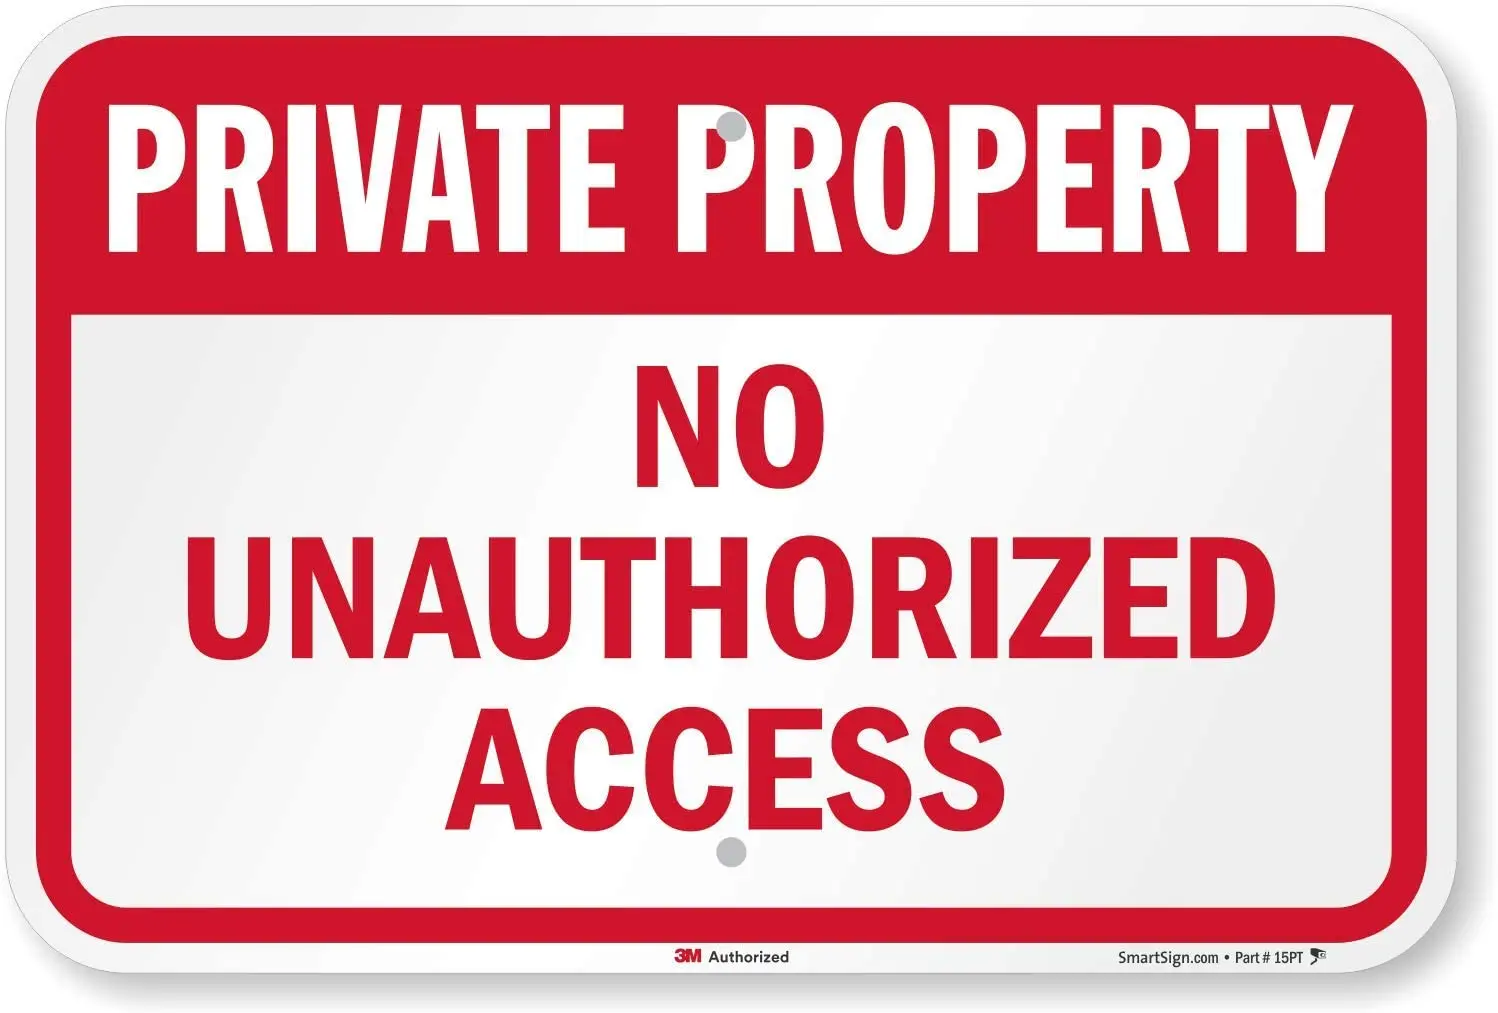 

SmartSign "Private Property No Unauthorized Access" Sign | 12" x 8" 3M Diamond Grade Reflective Aluminum